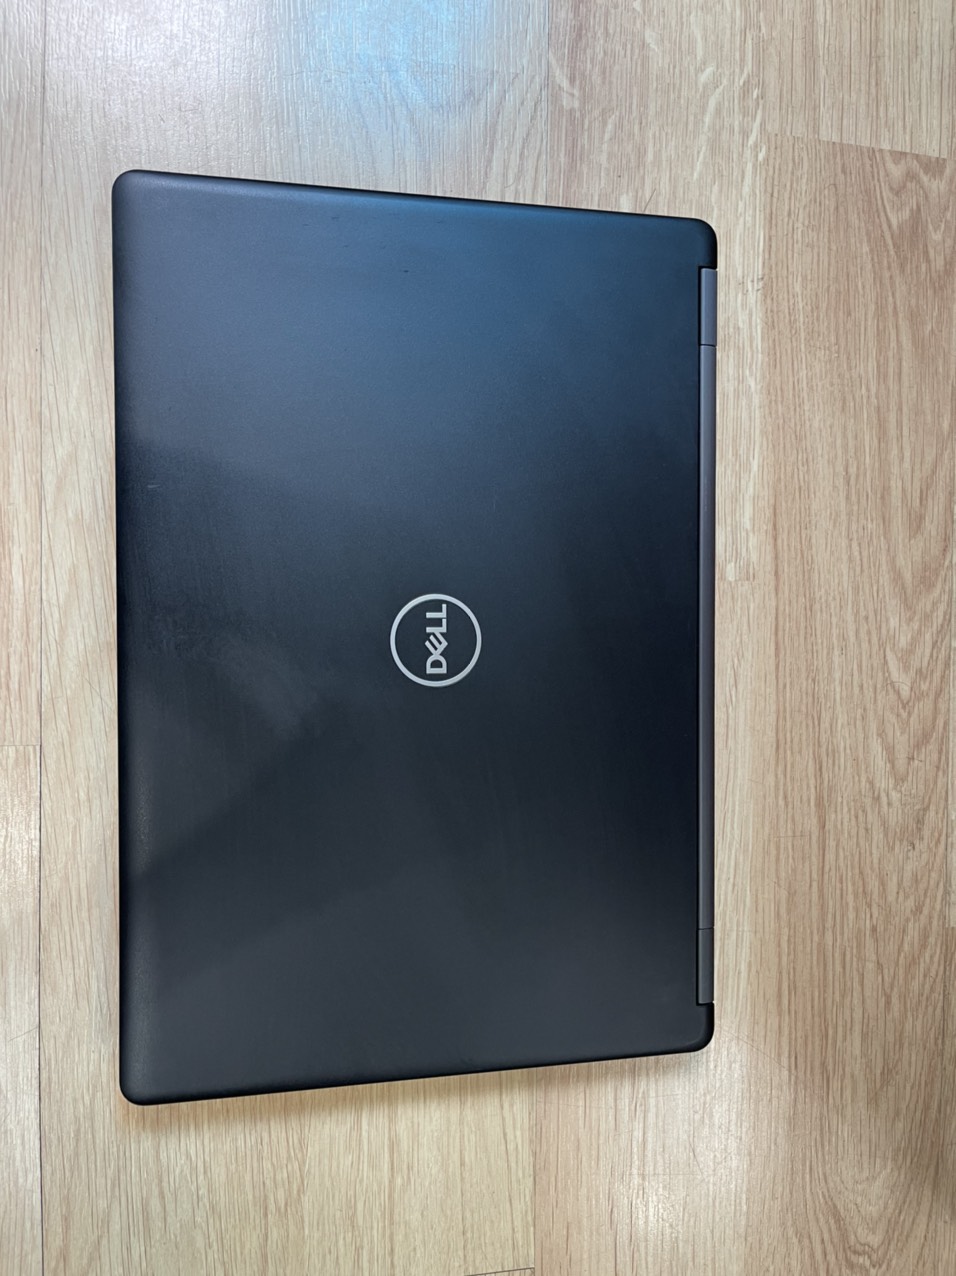 Dell Latitude 5490 [NHẬP 100% USA] Laptop Doanh nhân phân khúc cao cấp Core i5-8350U| RAM 8G| SSD 256G| Màn 14" FHD IPS| Card On Win 10 Pro Bản quyền Cam kết sản phẩm đúng mô tả Đúng chất lượng Hỗ trợ và Bảo hành đầy đủ